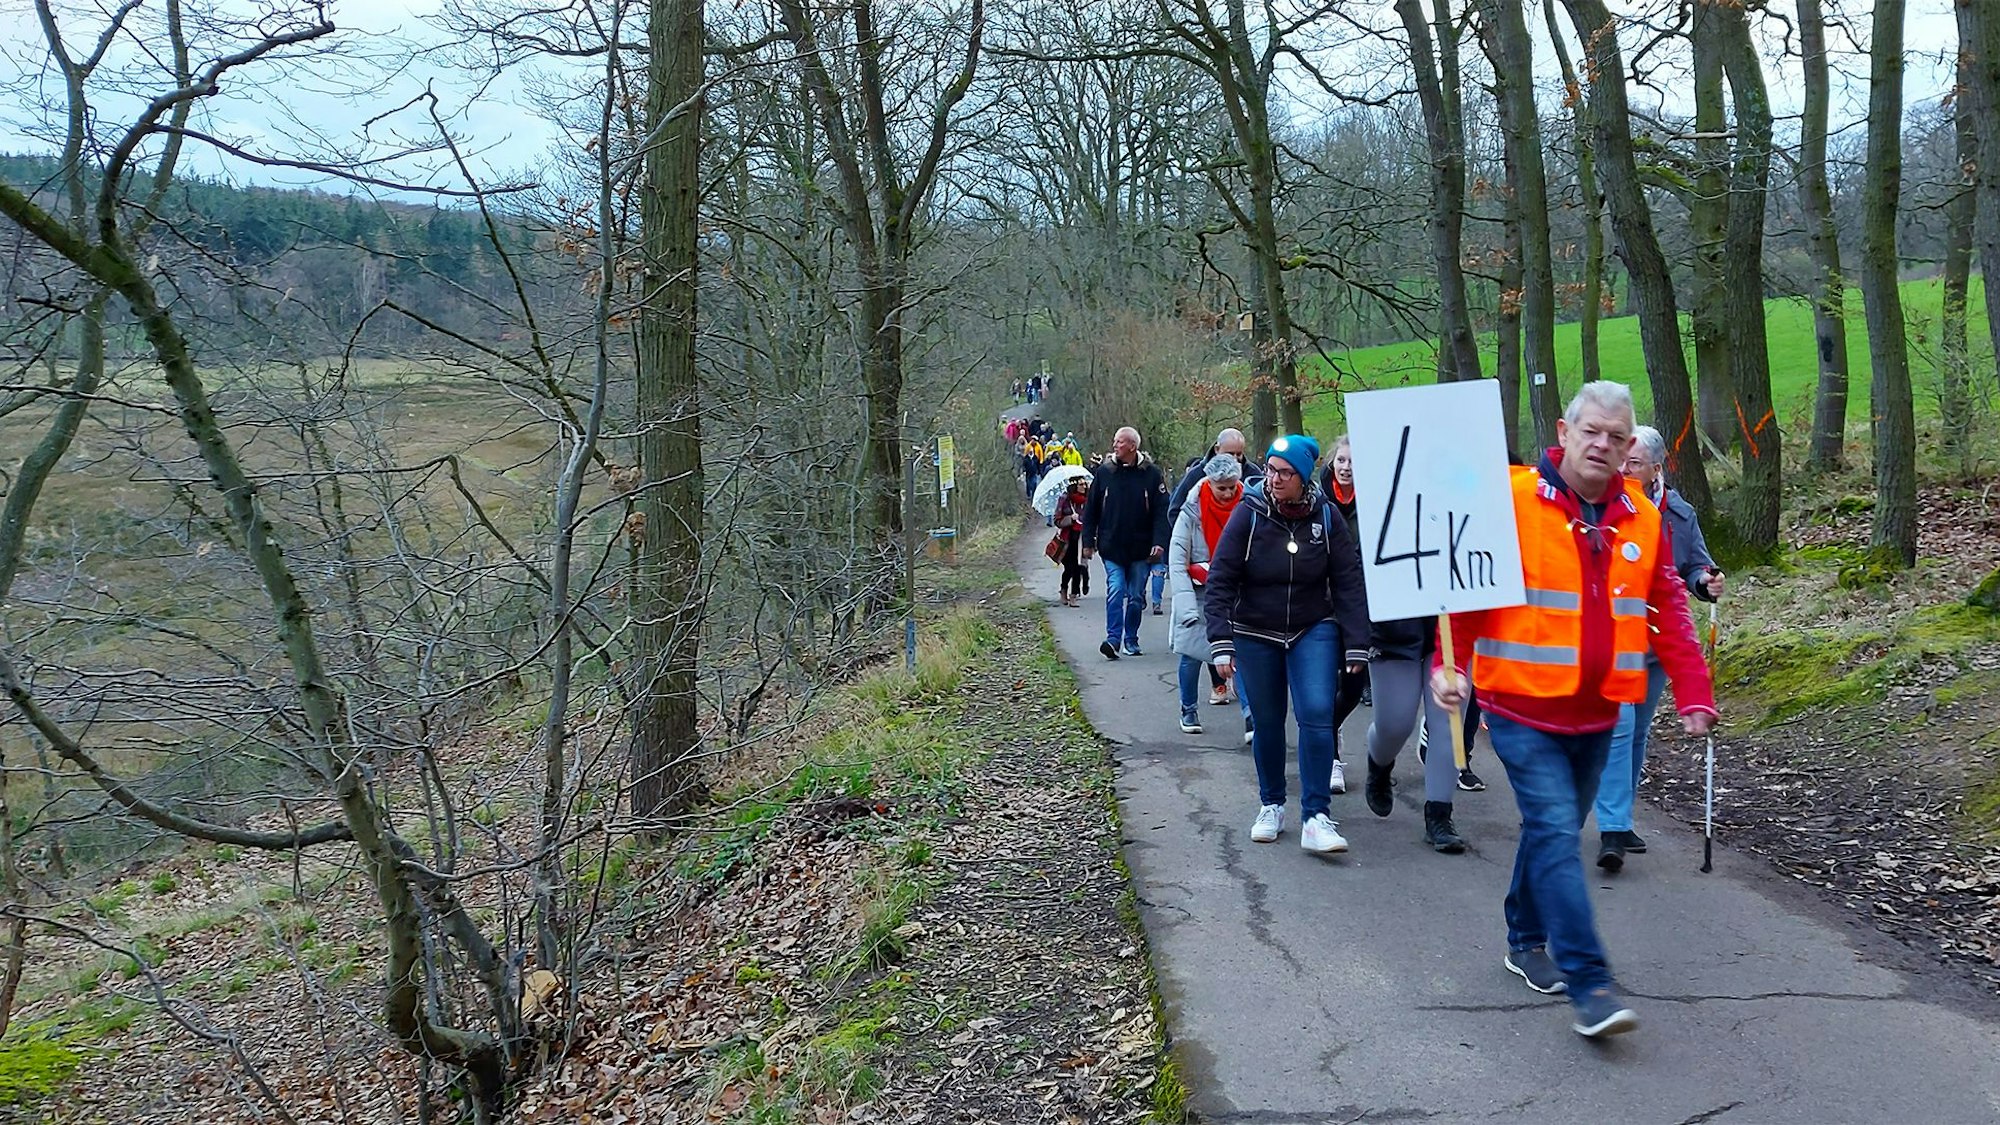 Hans Roitzheim, in orangefarbener Warnweste, trägt ein Schild mit der Aufschrift „4 km“. Ihm folgen mehrere Demoteilnehmer.